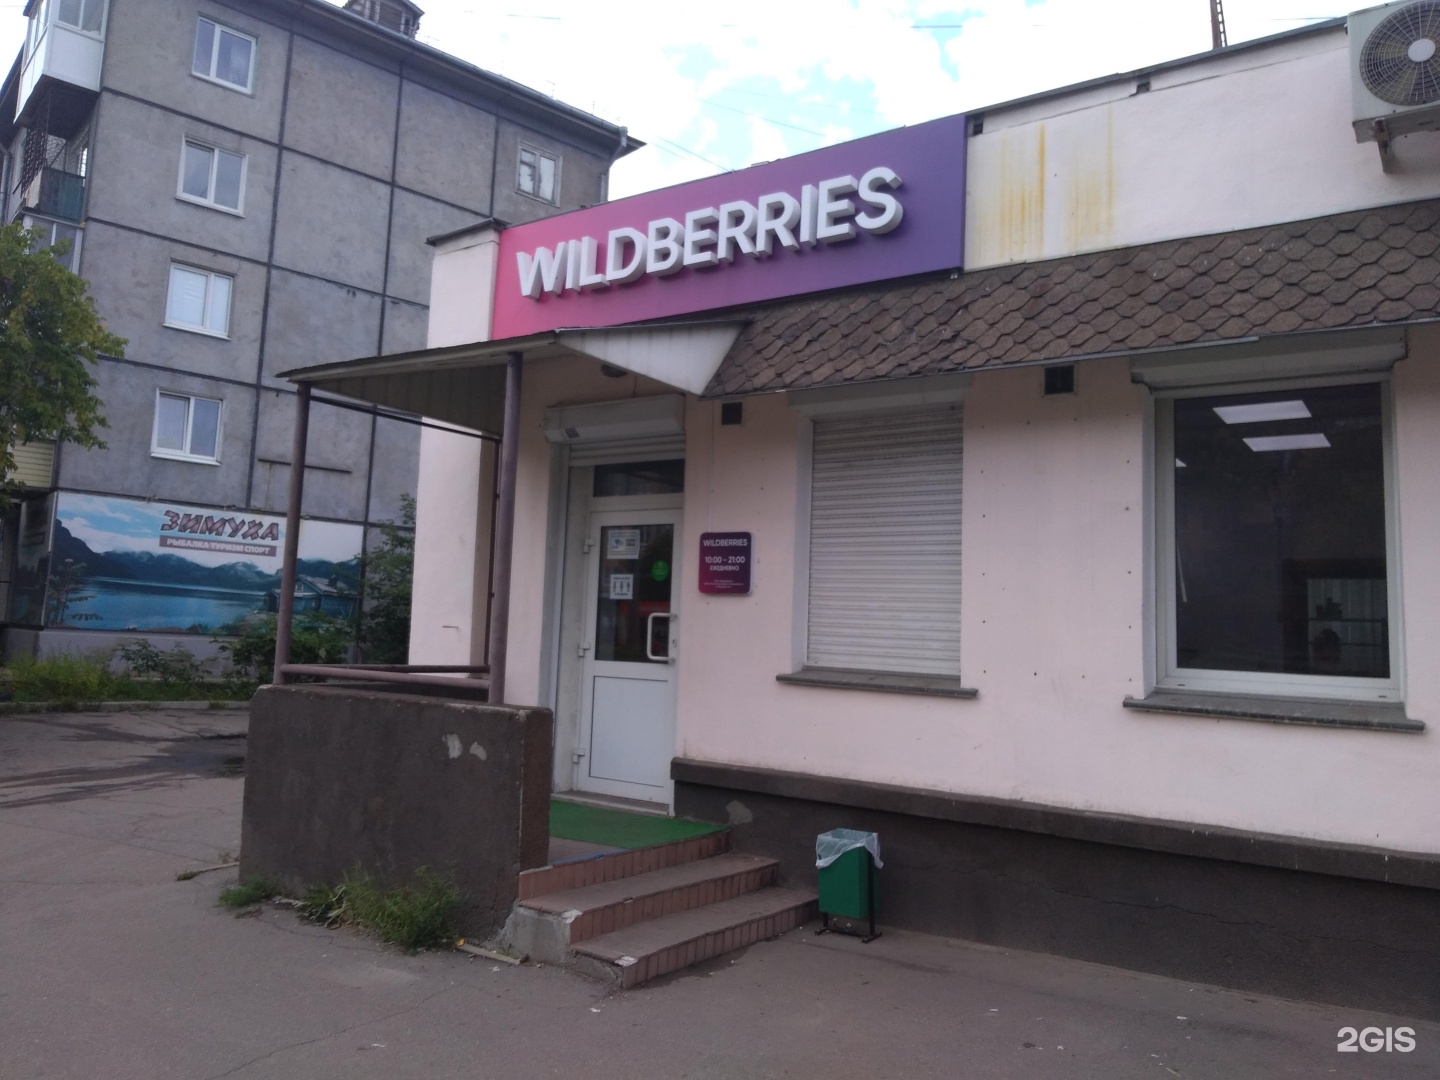 Wildberries Интернет Магазин Ангарск